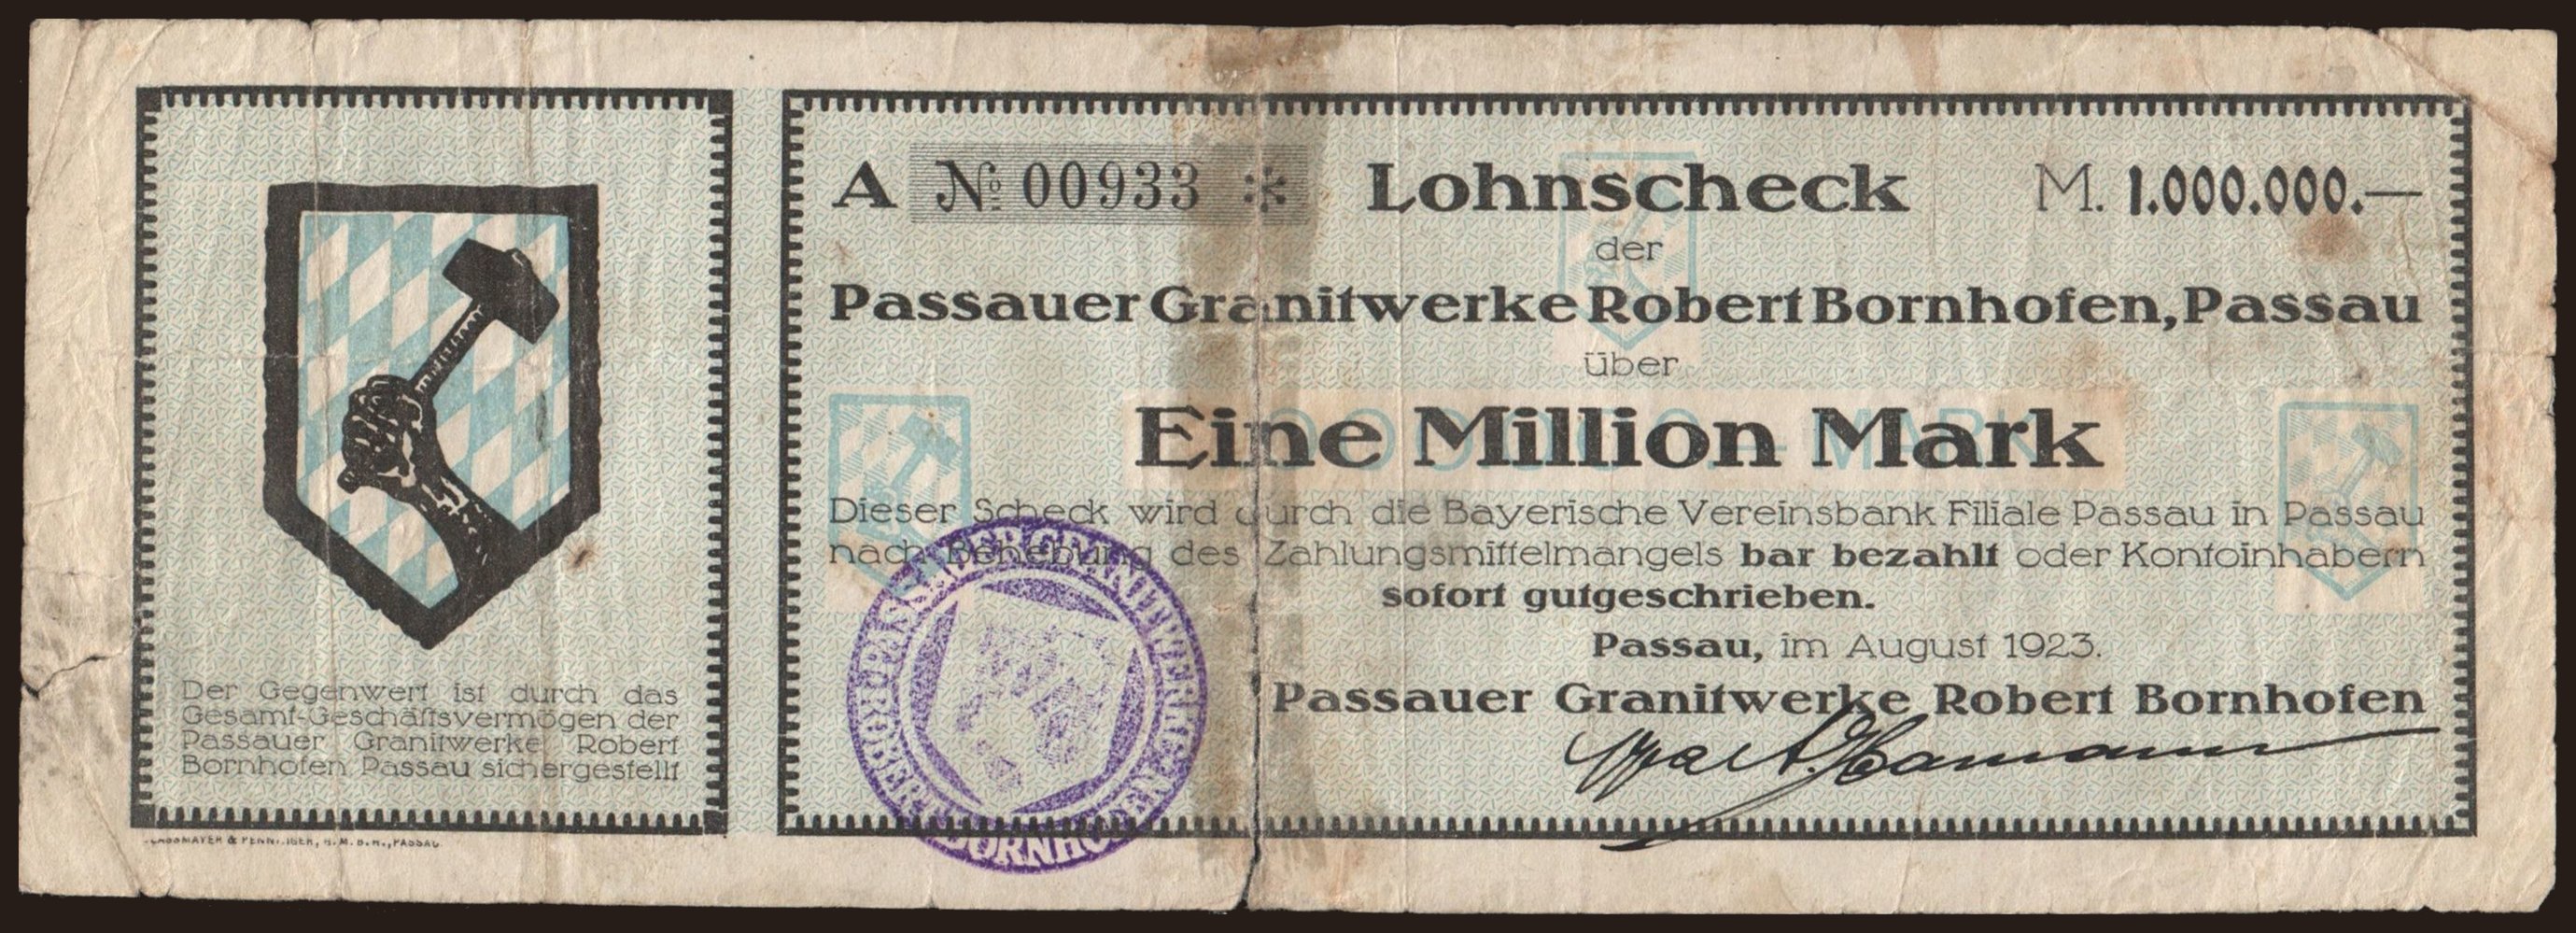 Passau/ Passauer Granitwerke Robert Bornhofen, 1.000.000 Mark, 1923